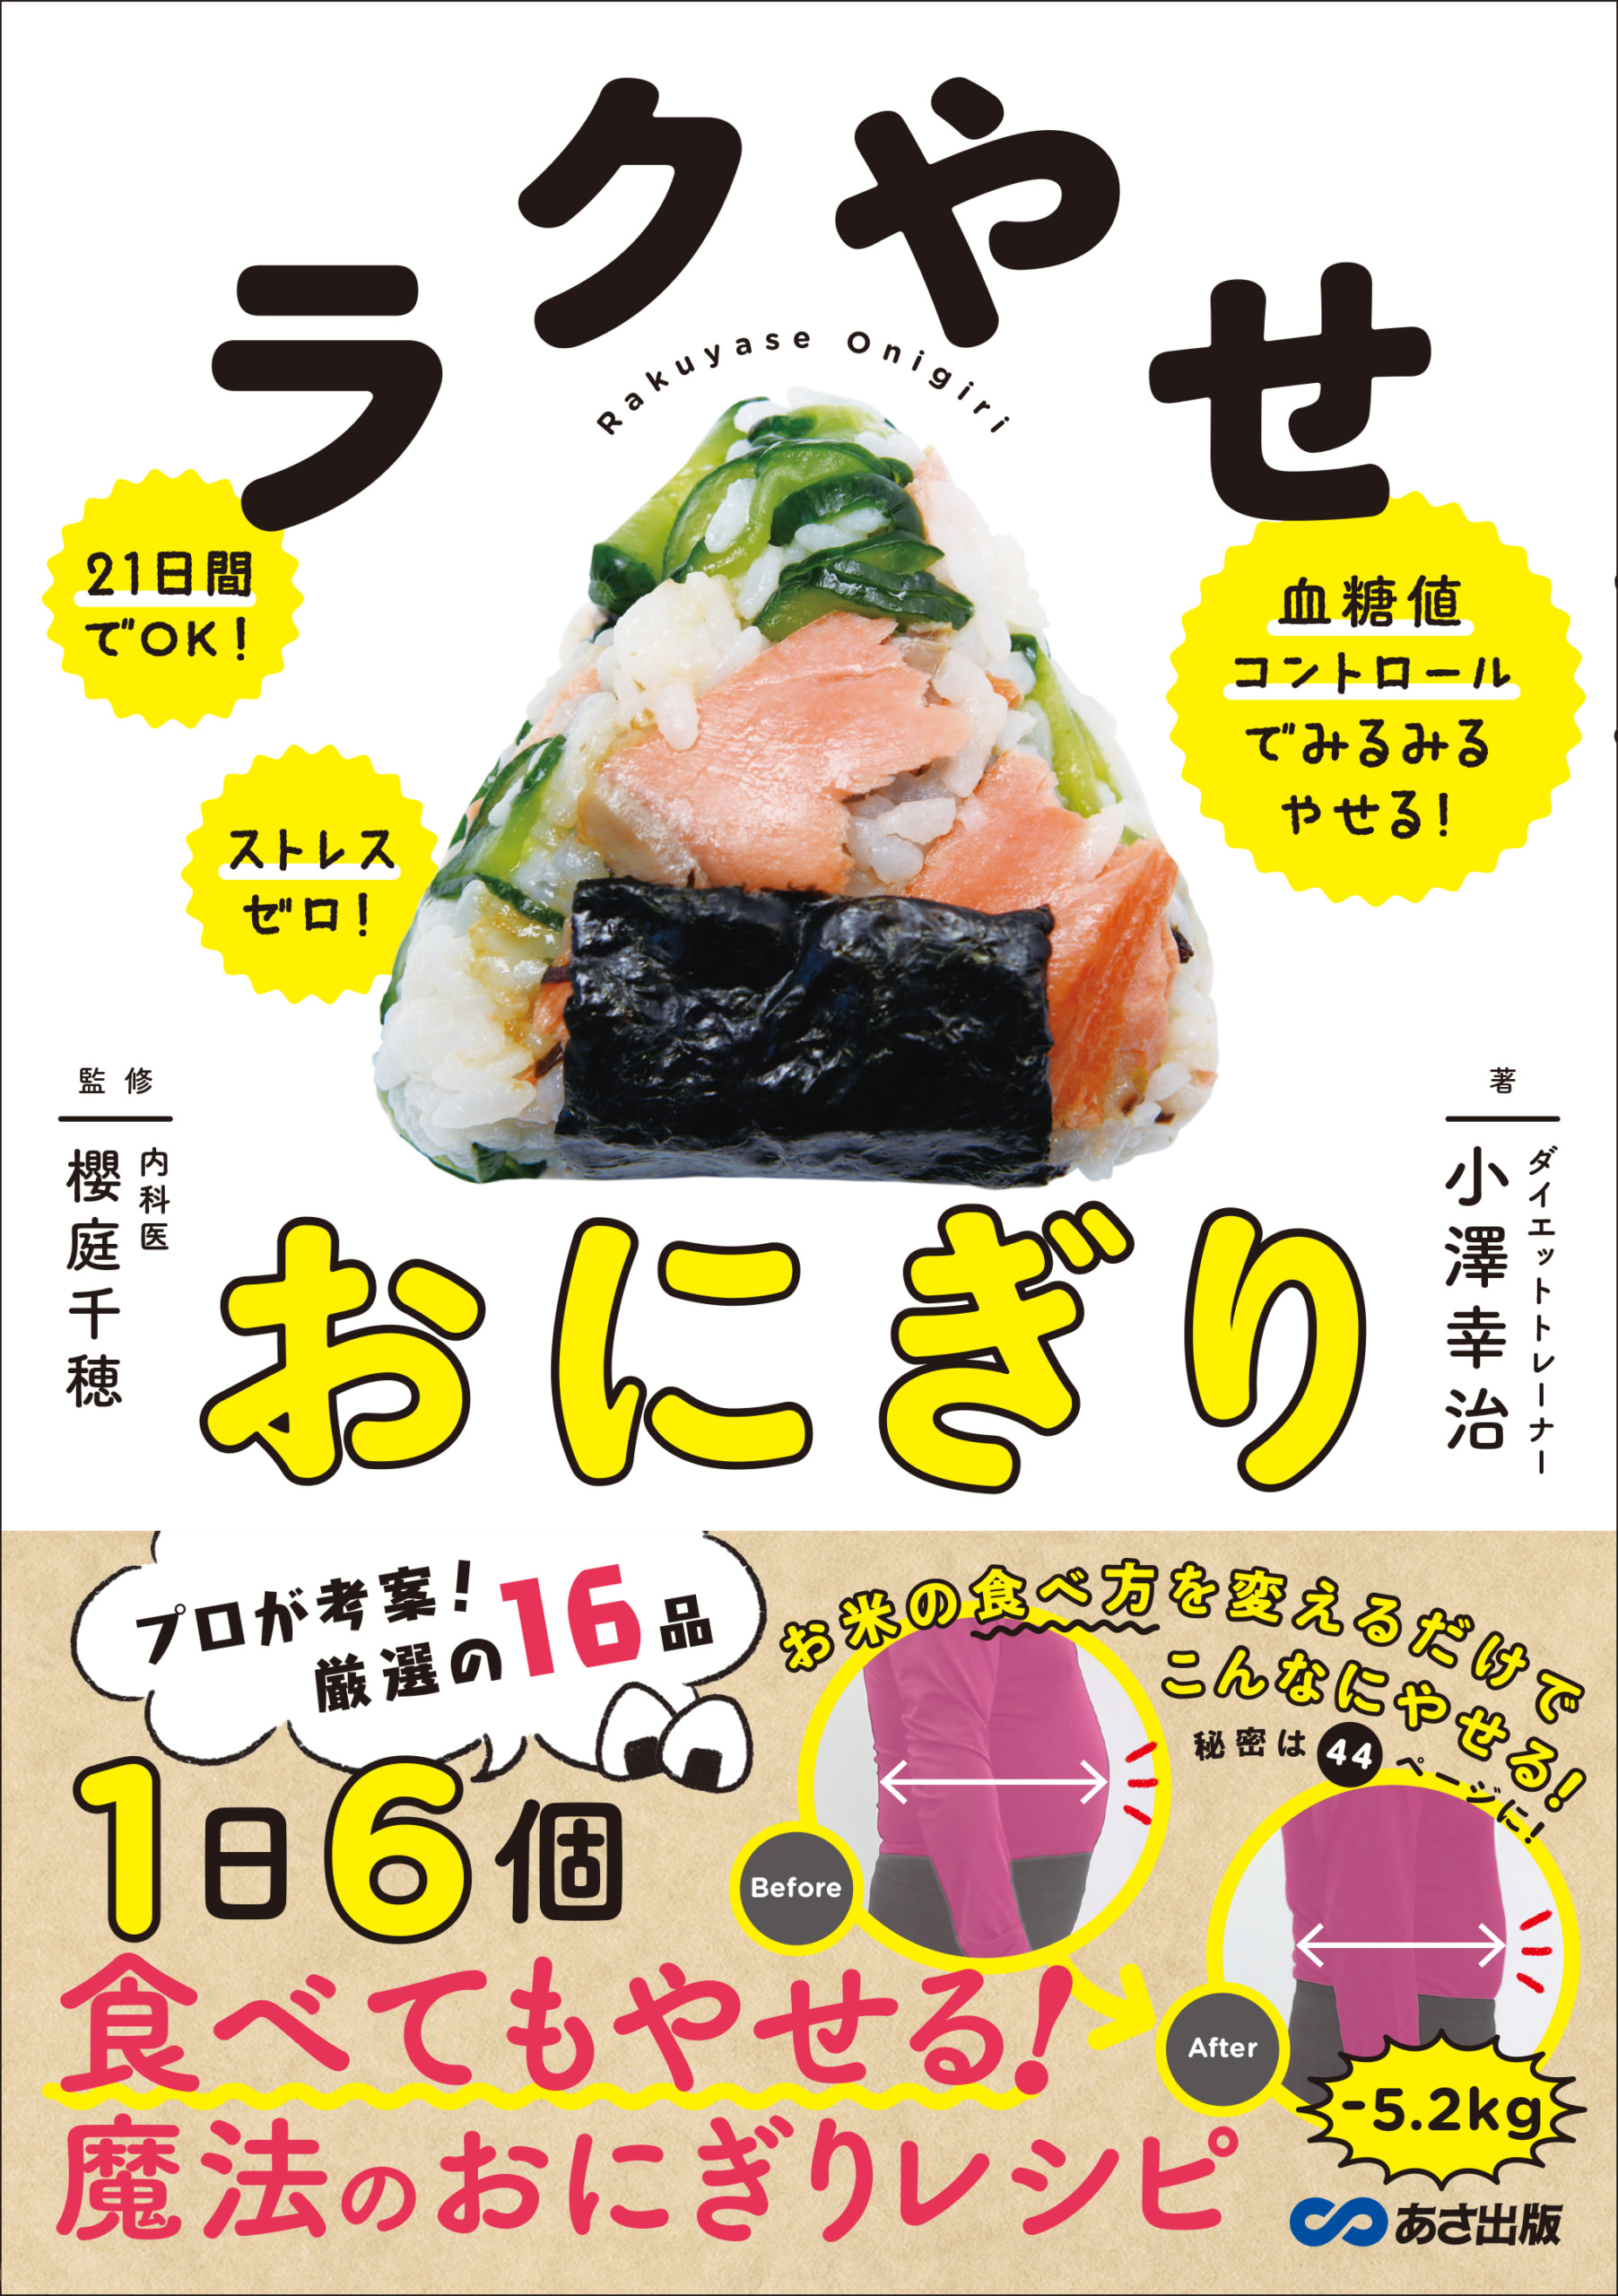 静岡県のコッペパン専門店「ヴィヴィド・パオ」
第2期アンバサダー14名が決定！
一緒に商品開発をおこなった
『モンブランコッペパン』が9月1日より販売開始